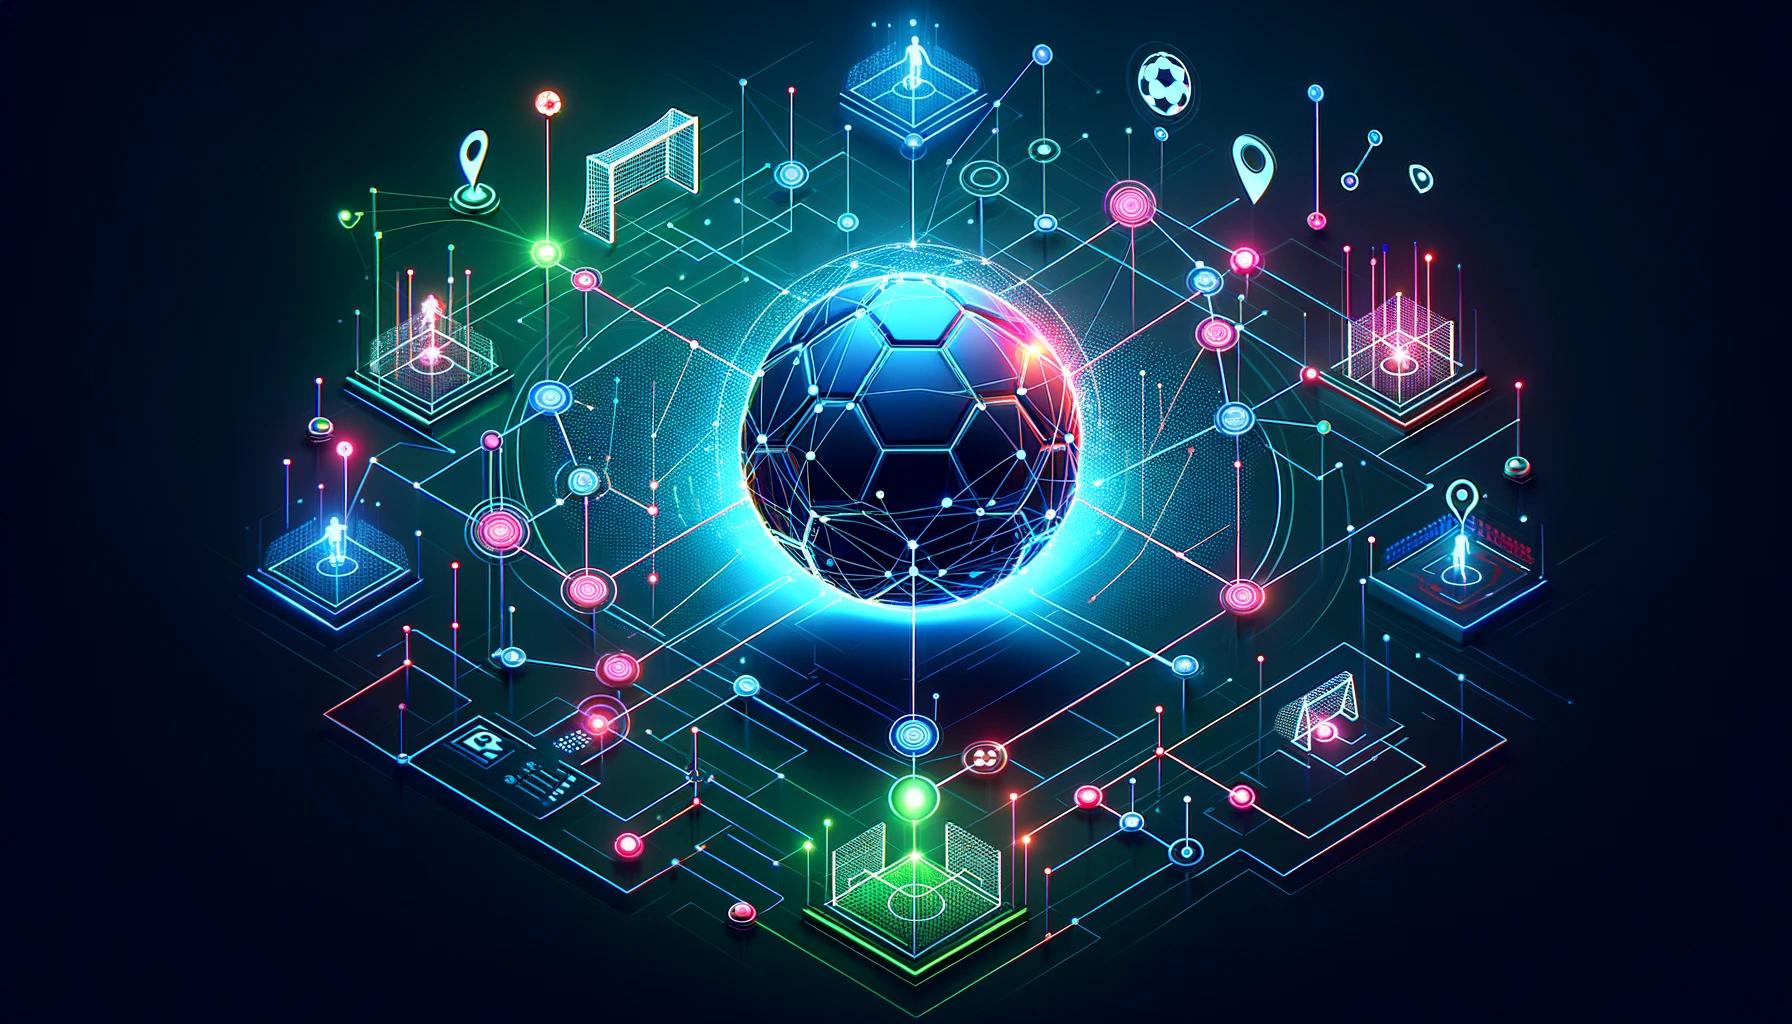 Чилиз назначает футбольный клуб «ПСЖ» в качестве проверяющего сети — дерзкий платонический анализ данных Blockchain. Вертикальный поиск. Ай.